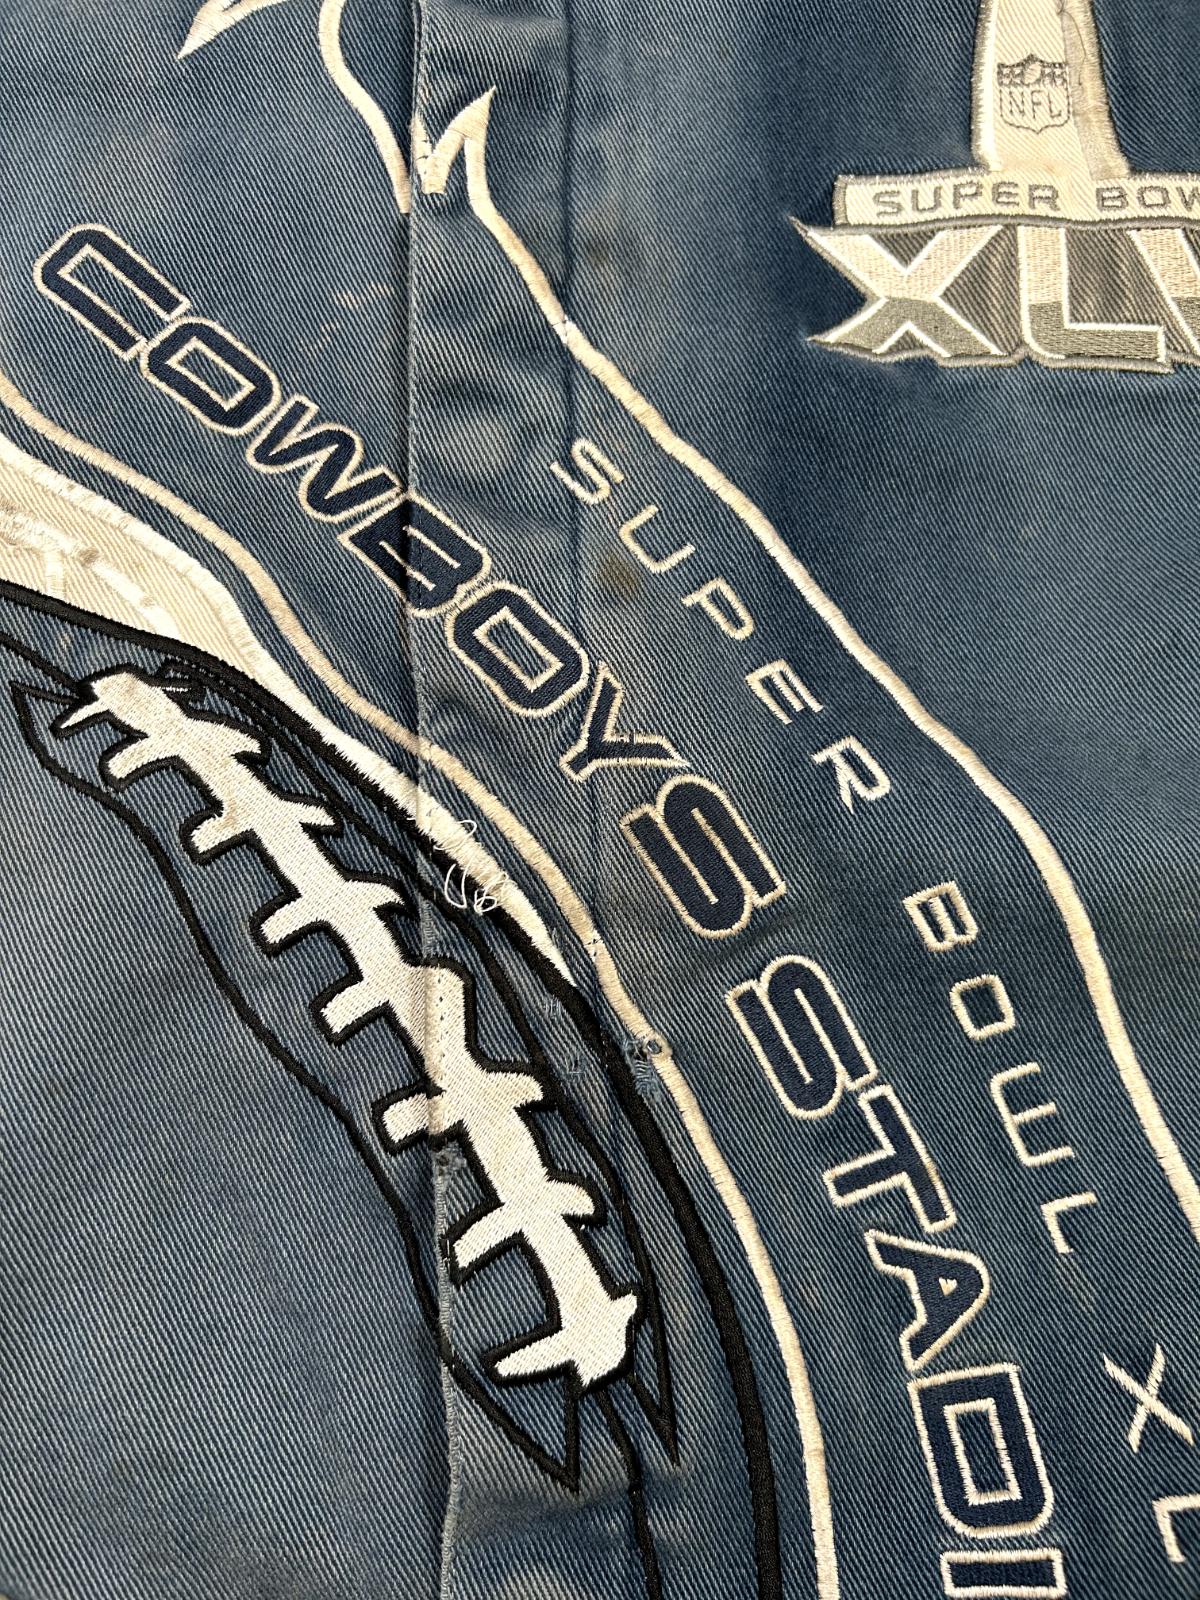 2011 Dallas Cowboys NFL Super Bowl XLV Football Jacket Size 5XL